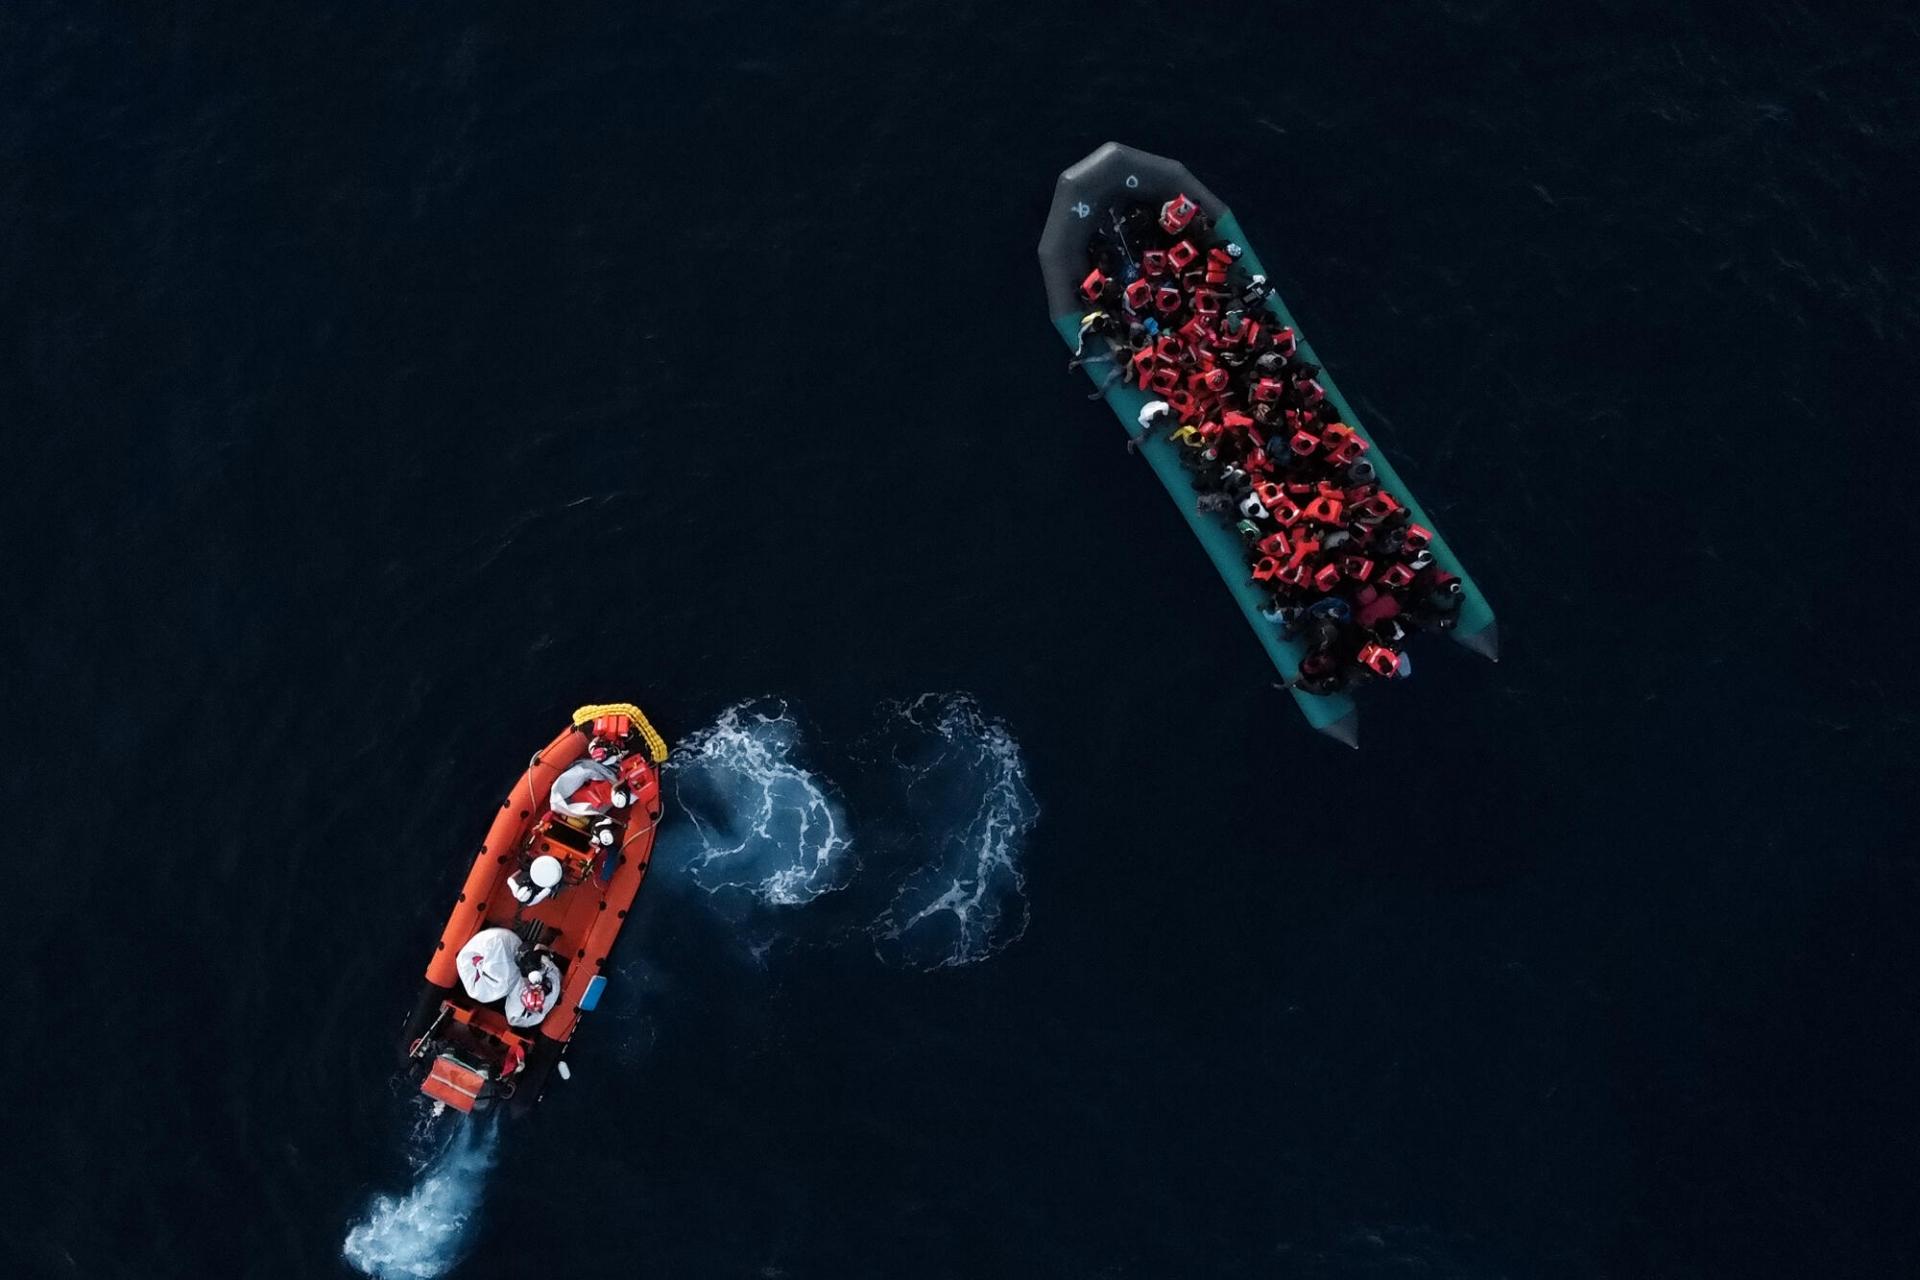 Dans la soirée du 23 octobre, un bateau pneumatique avec 95 personnes à son bord a été secouru par les équipes du Geo Barents juste avant qu’il ne soit intercepté par les garde-côtes libyens. 